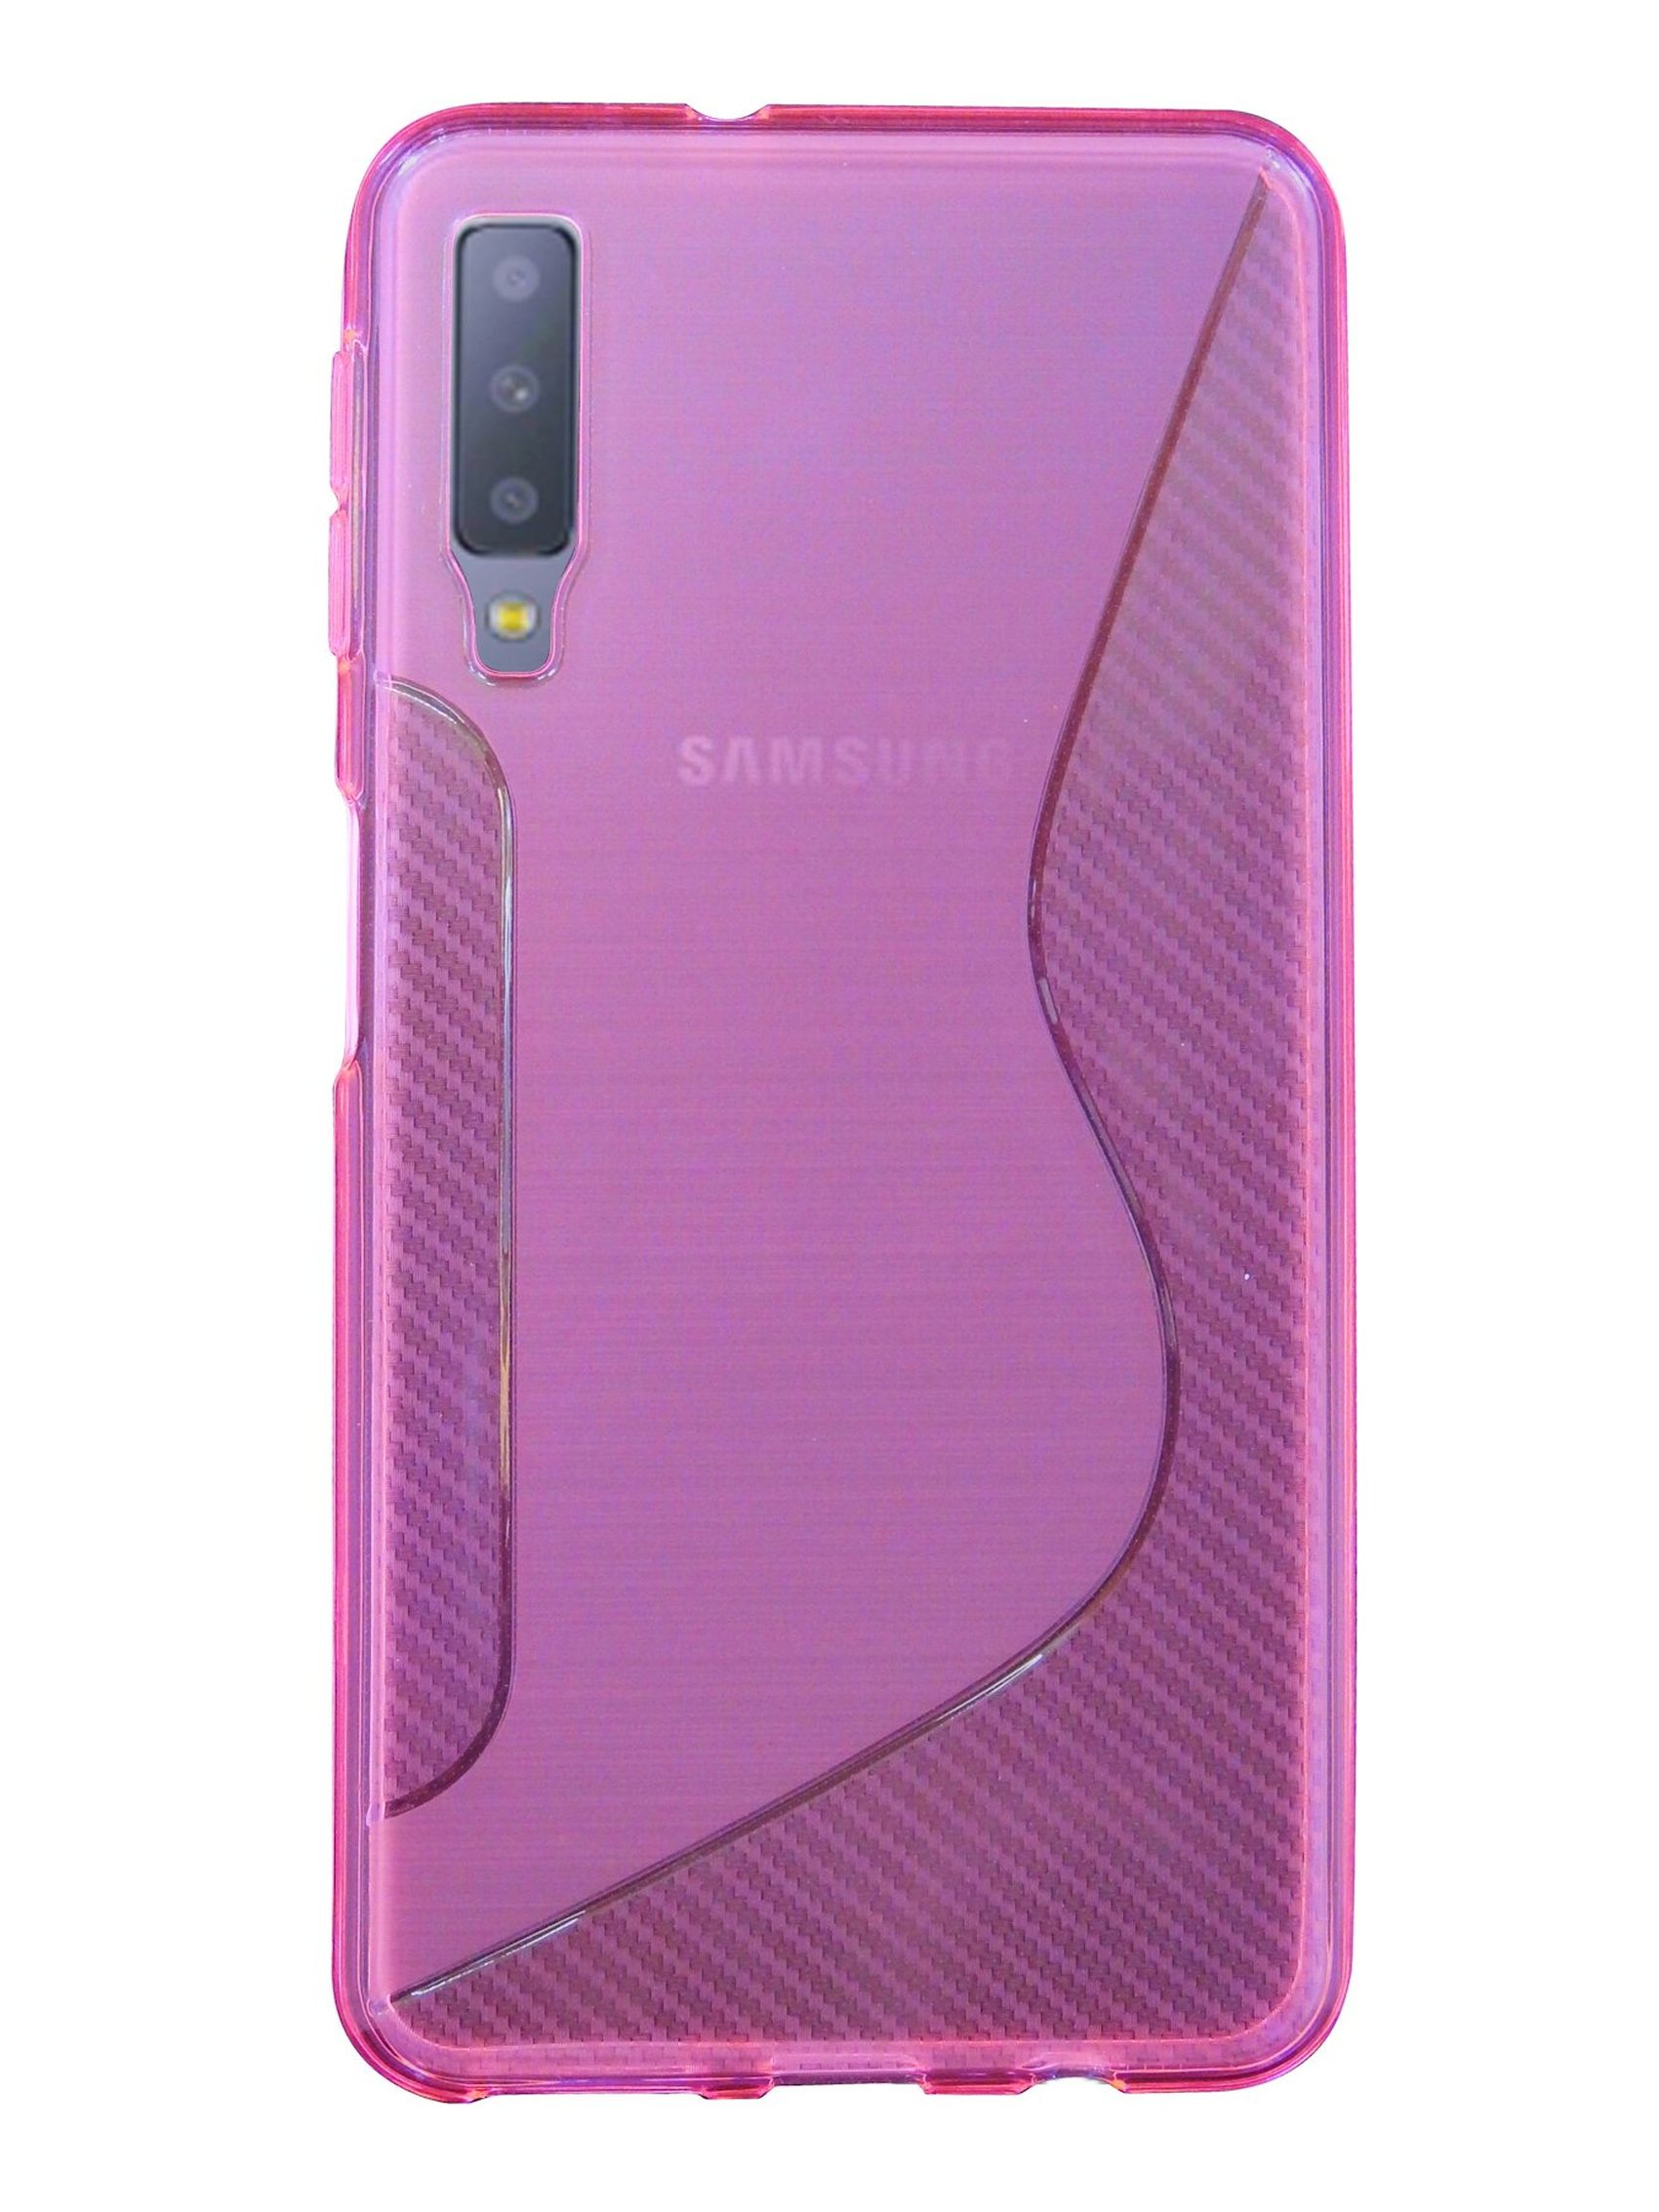 COFI S-Line Samsung, A7 Galaxy 2018, Rosa Cover, Bumper